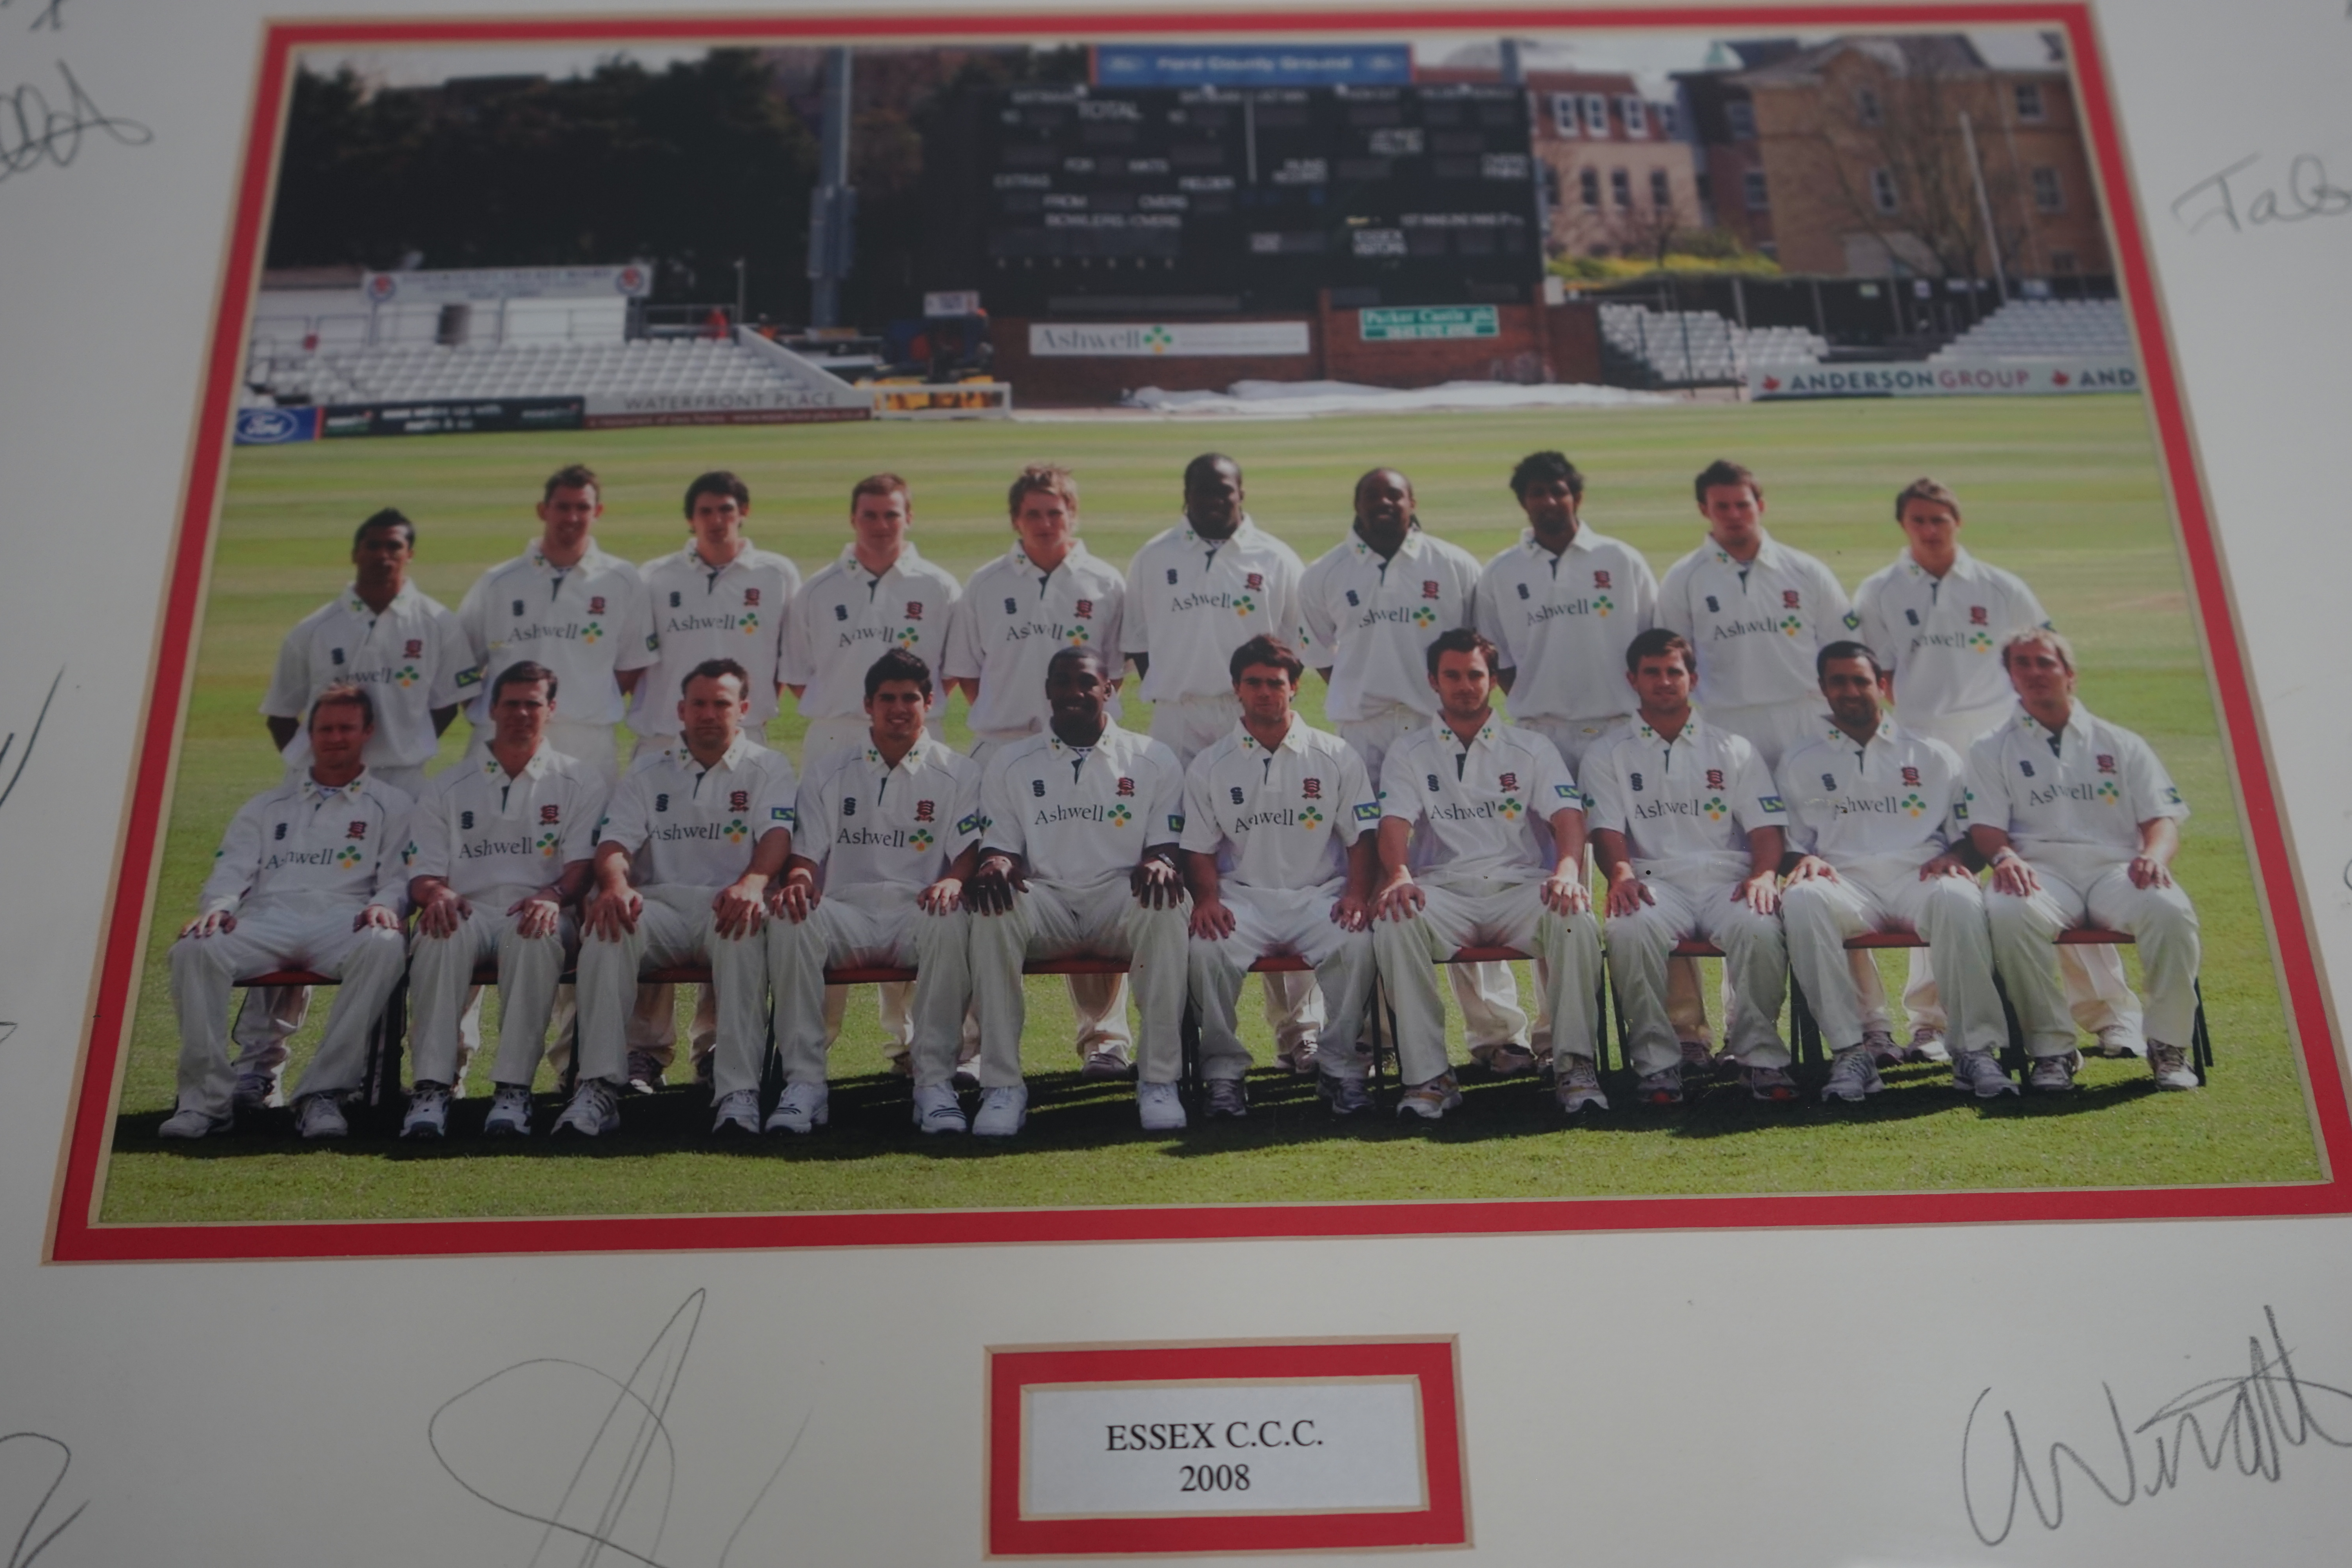 Essex CC 2008 team photo signed - Image 2 of 3